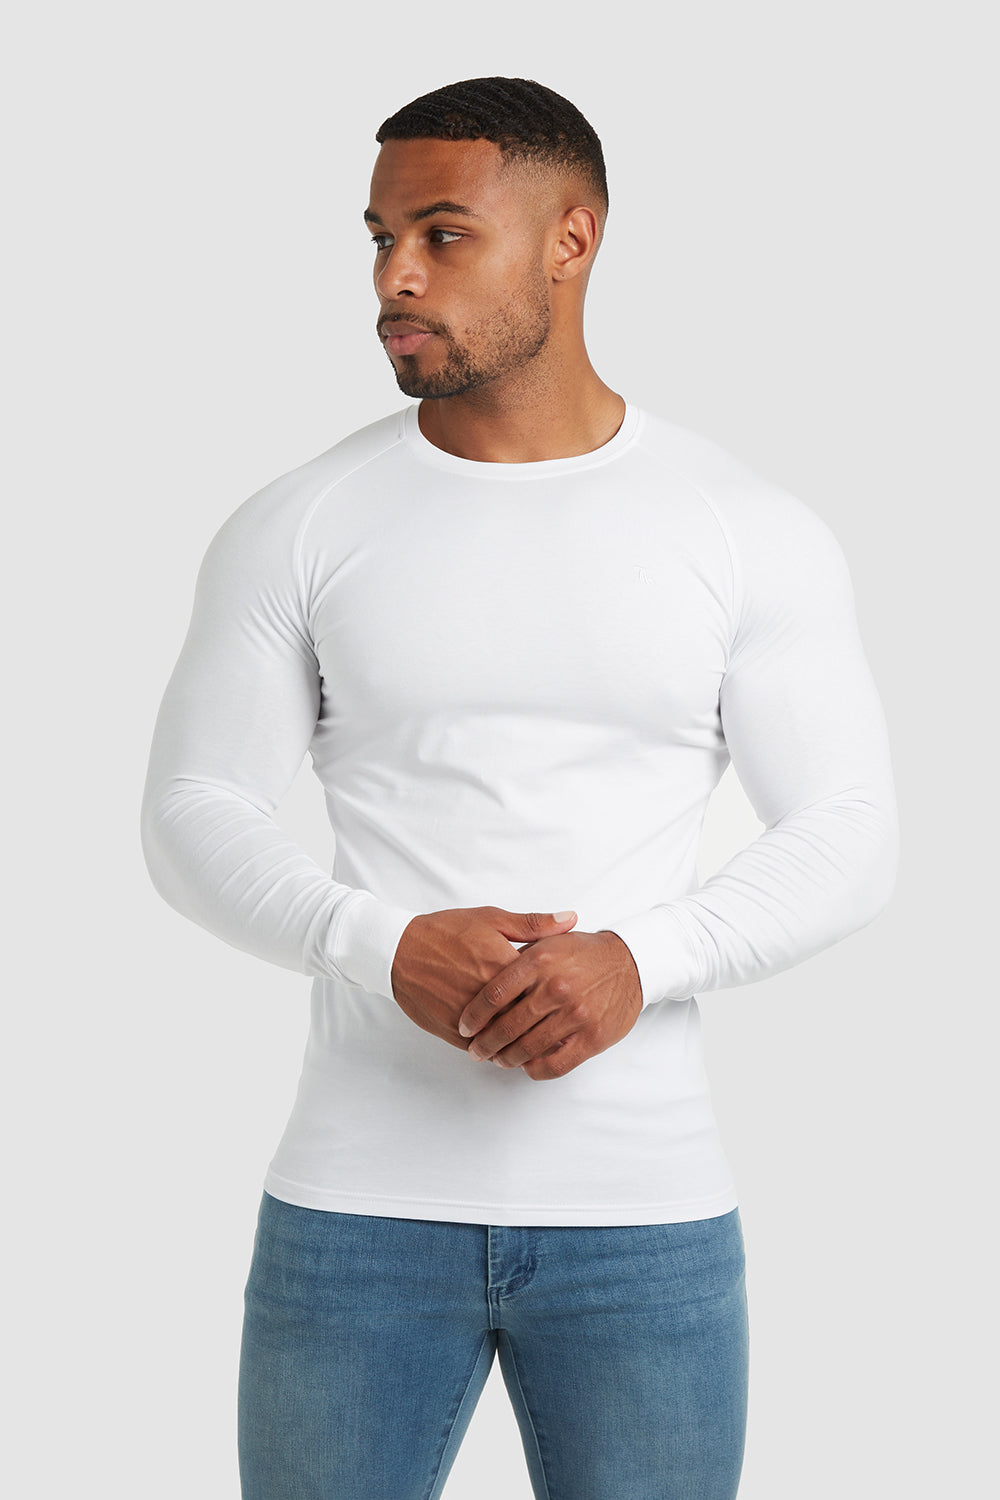 Prisnedsættelse kran opføre sig Athletic Fit T-Shirt (LS) in White - TAILORED ATHLETE - USA